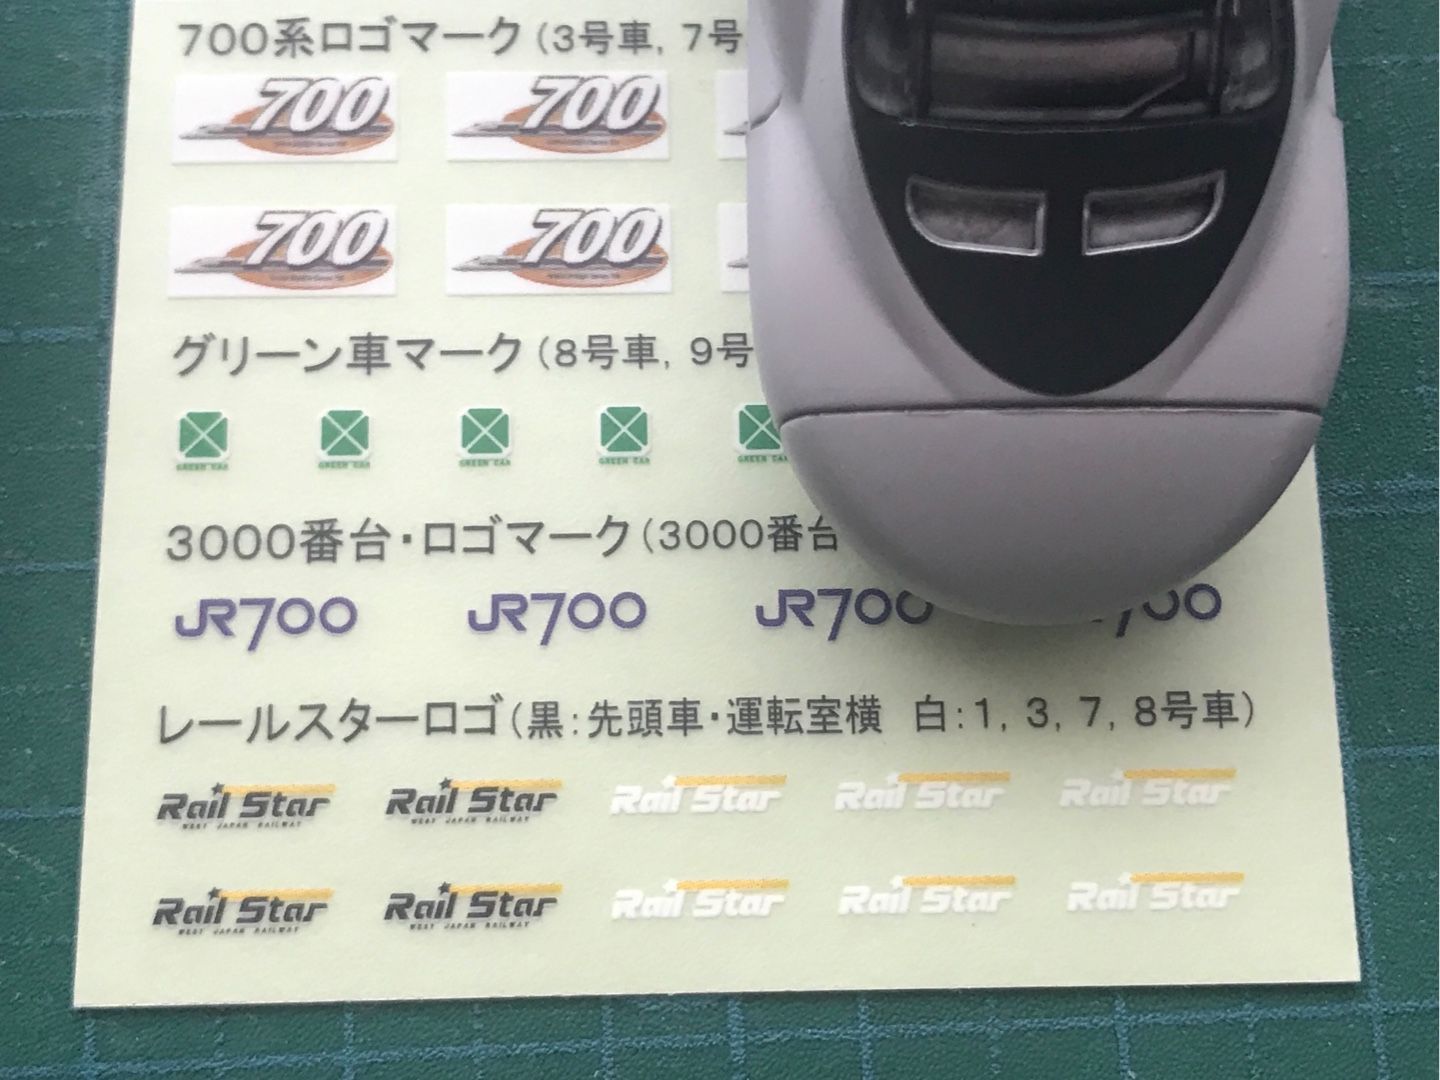 700系新幹線16号車 かずさんのｂトレ日記 楽天ブログ